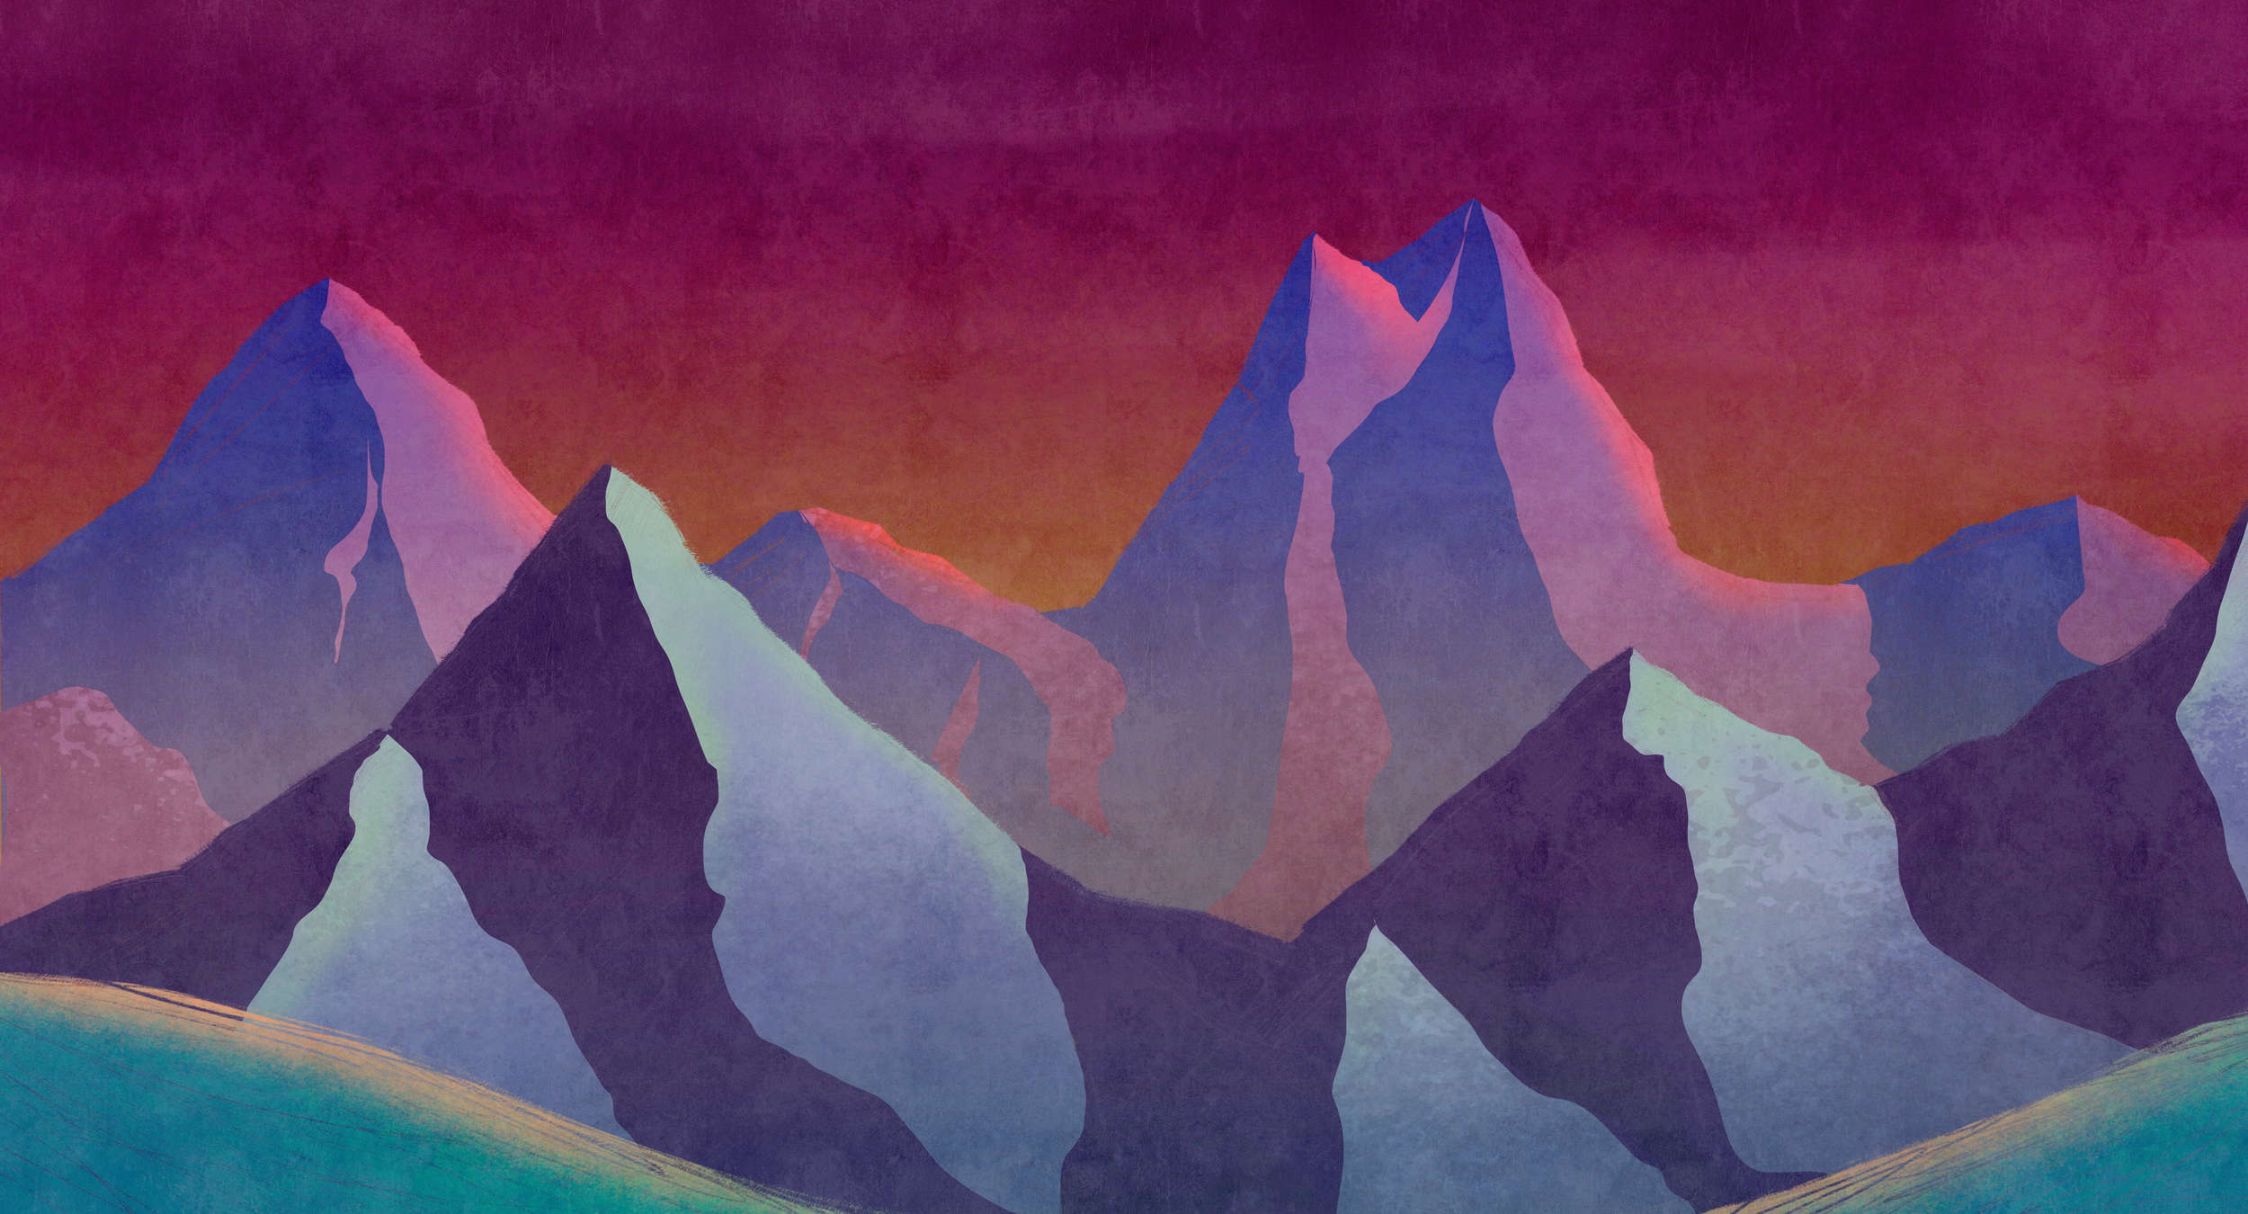             Digital behang »altitude 1« - Abstracte bergen in neonkleuren met vintage gipstextuur - Matte, gladde vliesstof
        